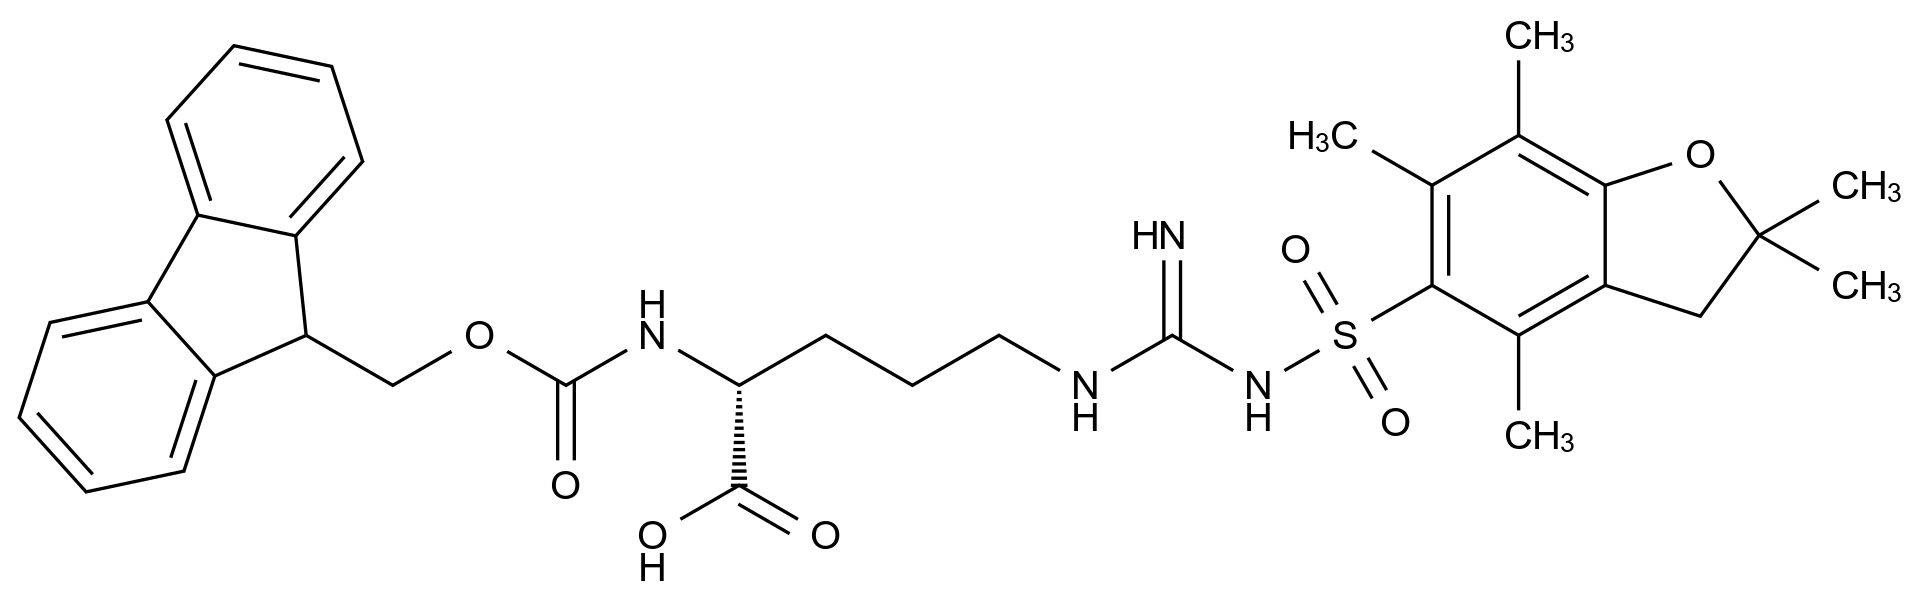 [187618-60-6] Nα-Fmoc-Nω-Pbf-D-精氨酸